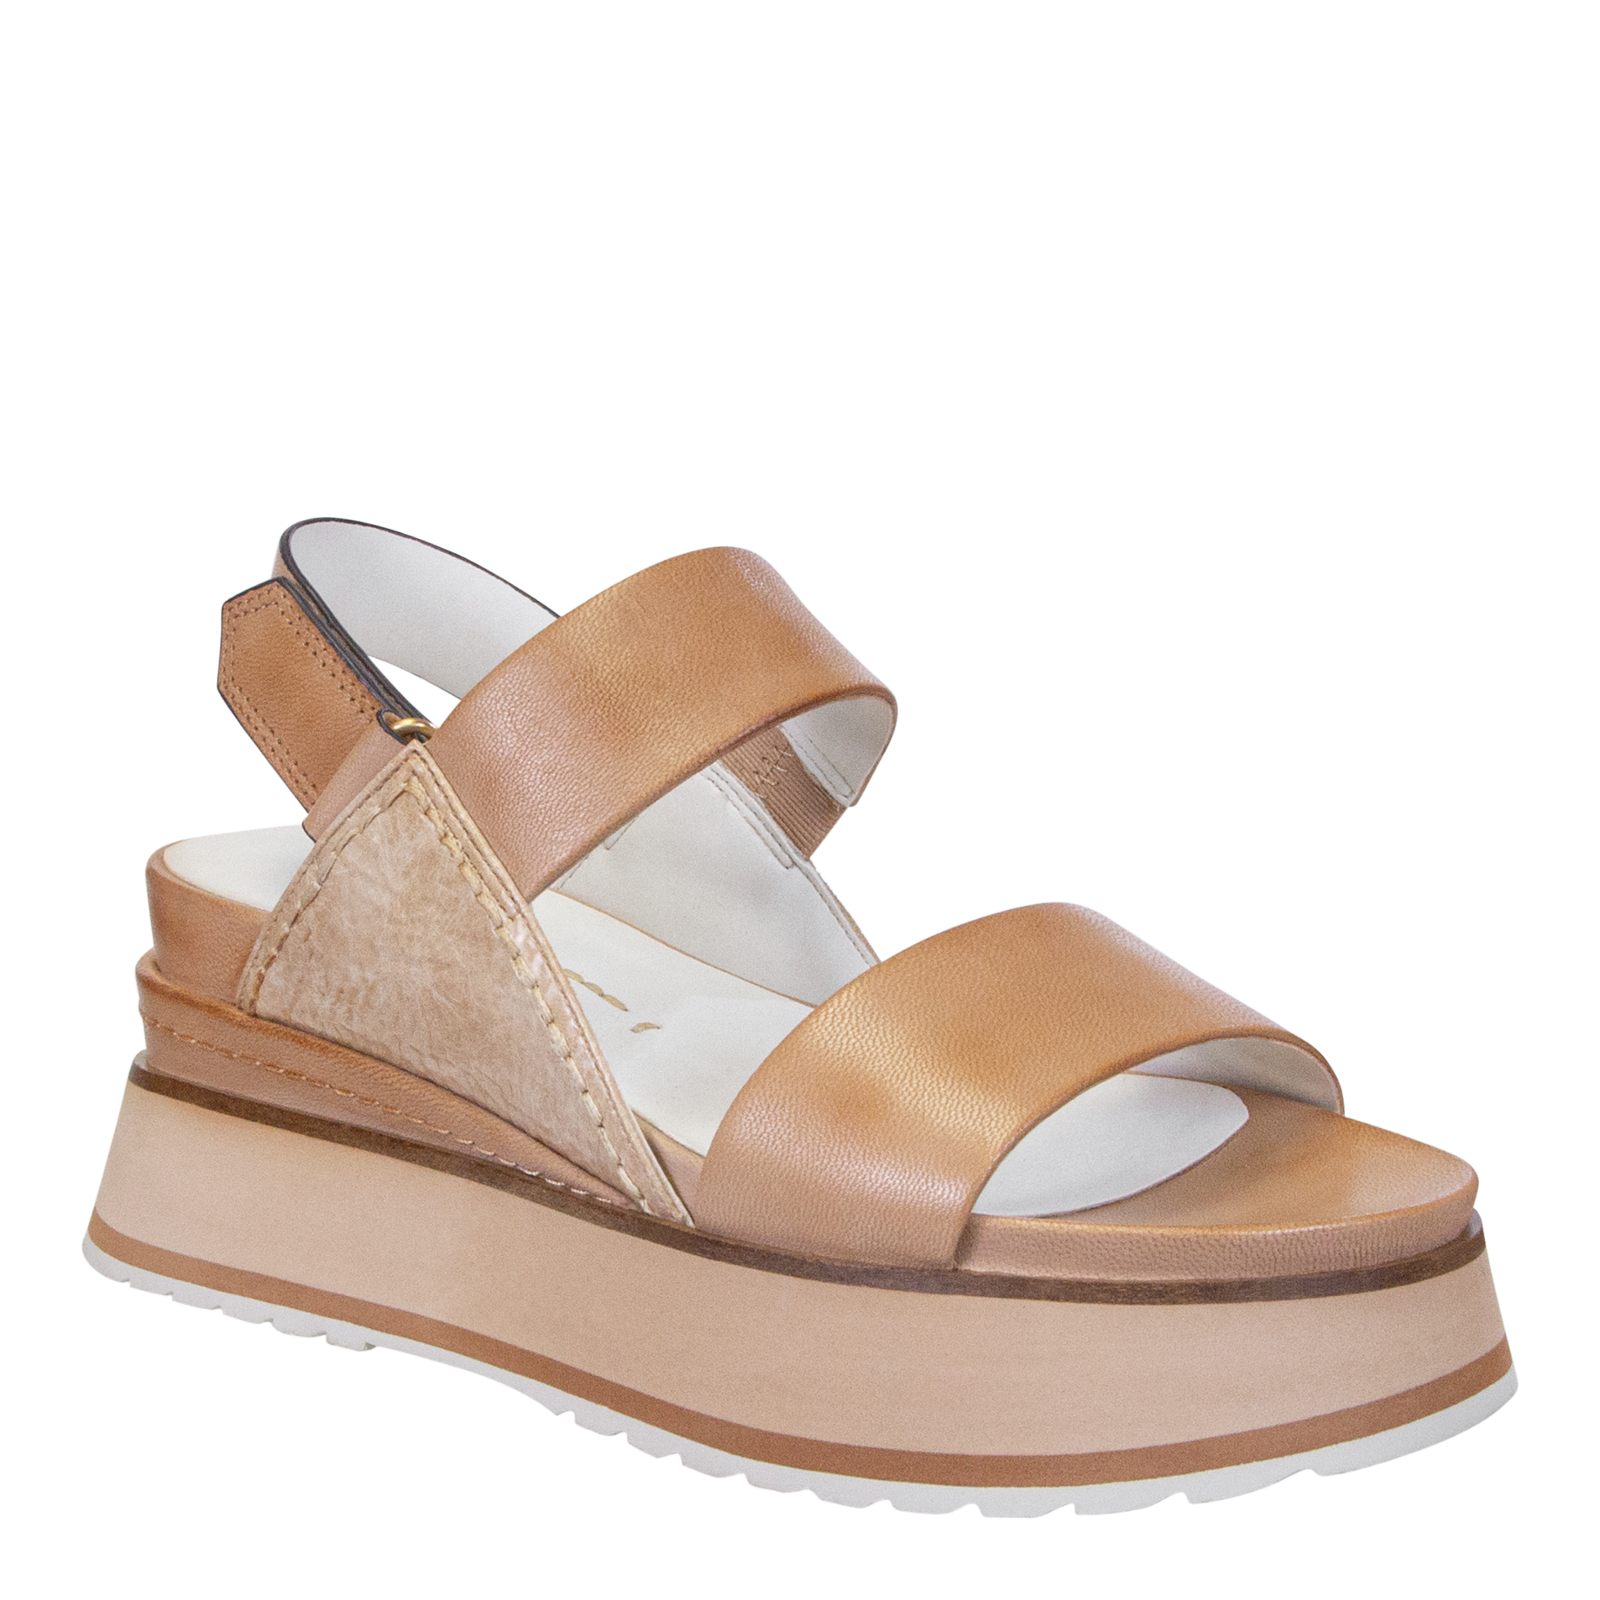 NAKED - DIMENSION in ECRU Platform Sandals – shop.gottahavemypumps.com